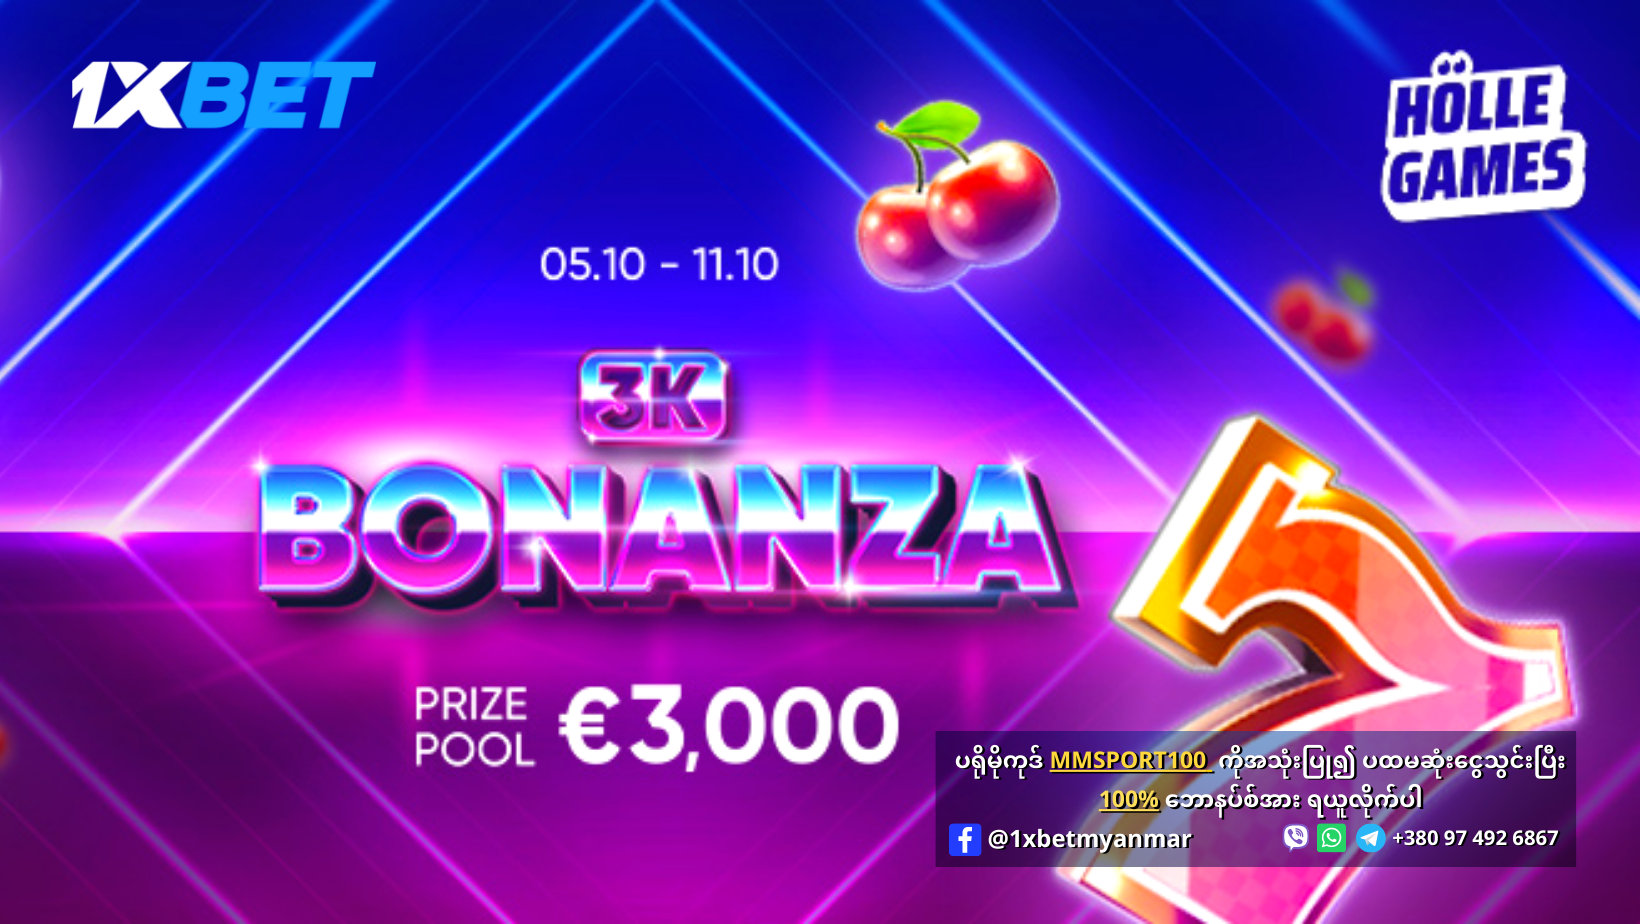 3K Bonanza Promotion